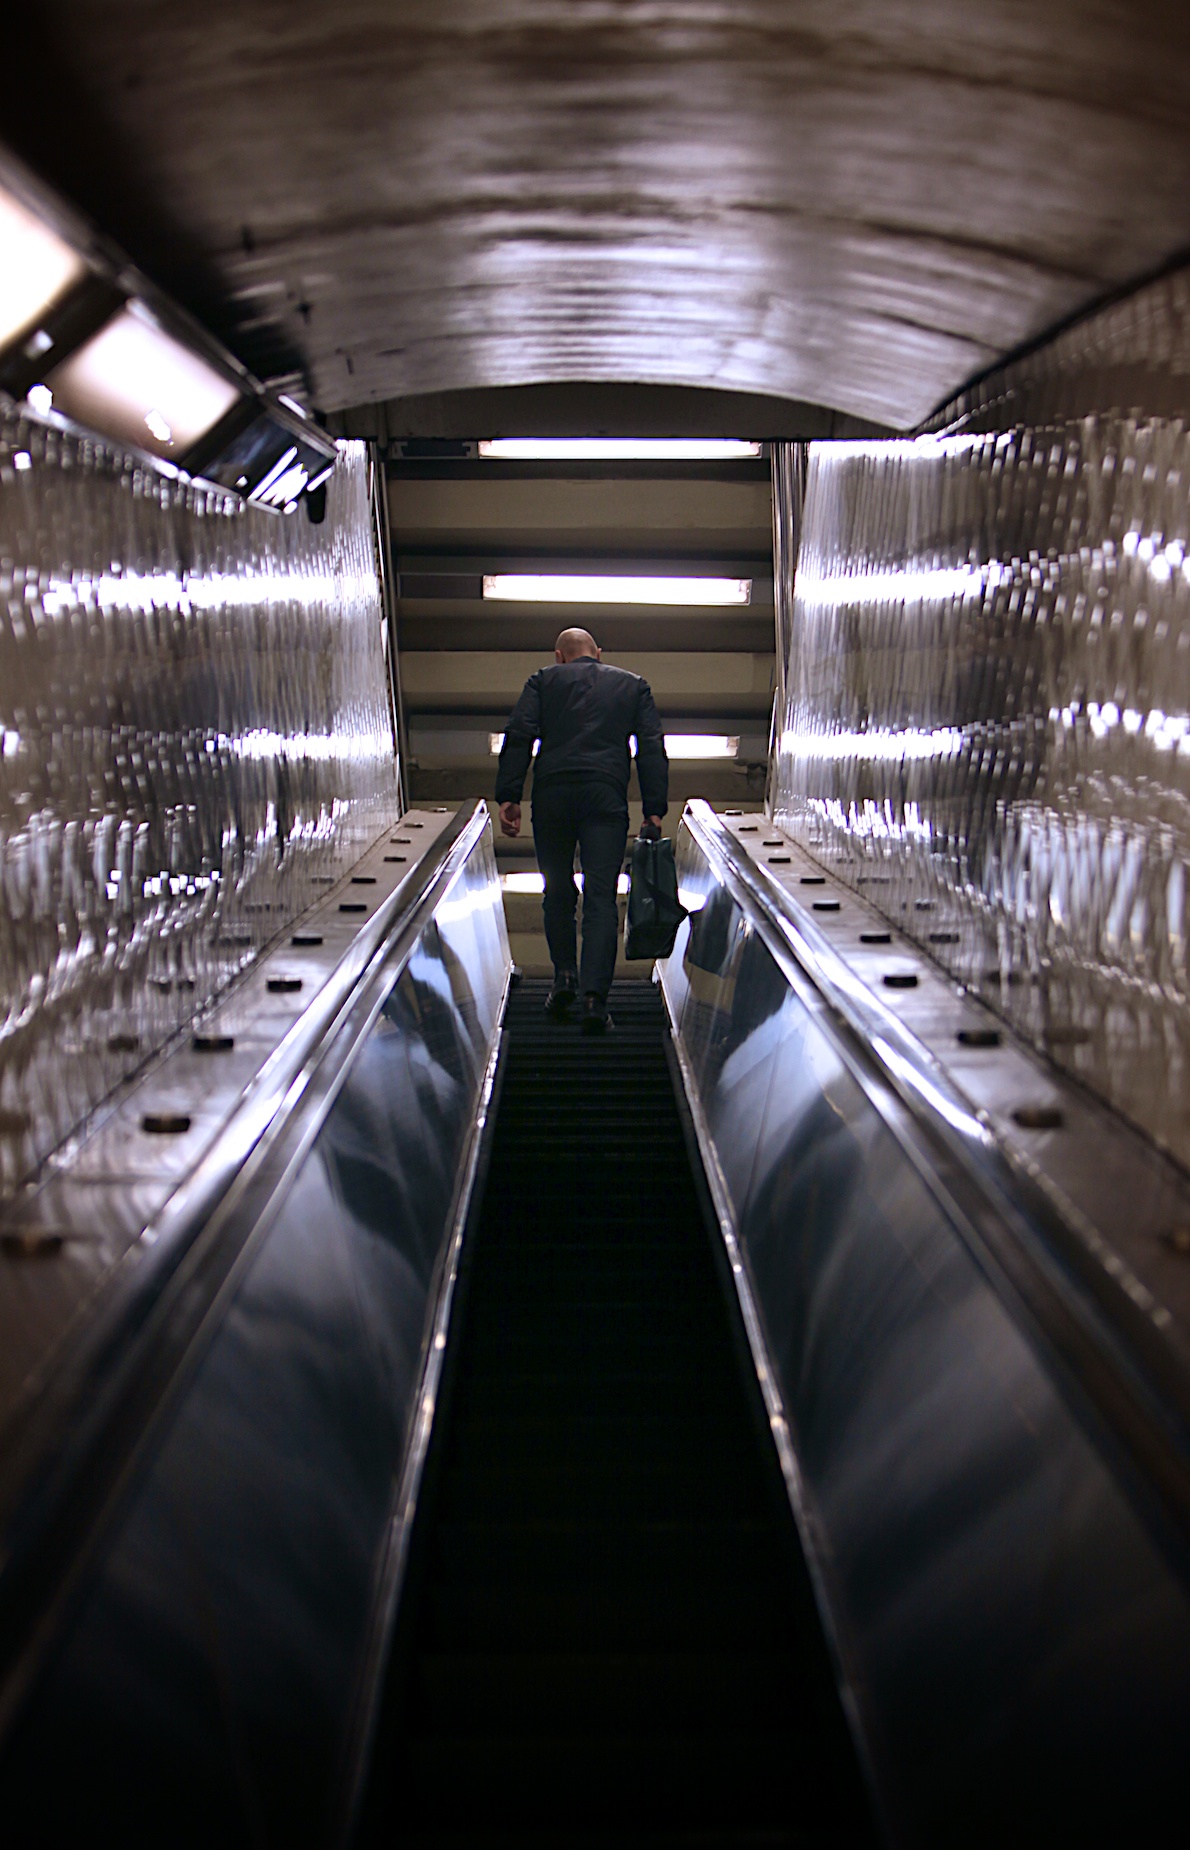 Taking the escalator at Lexington Av - 53rd St.